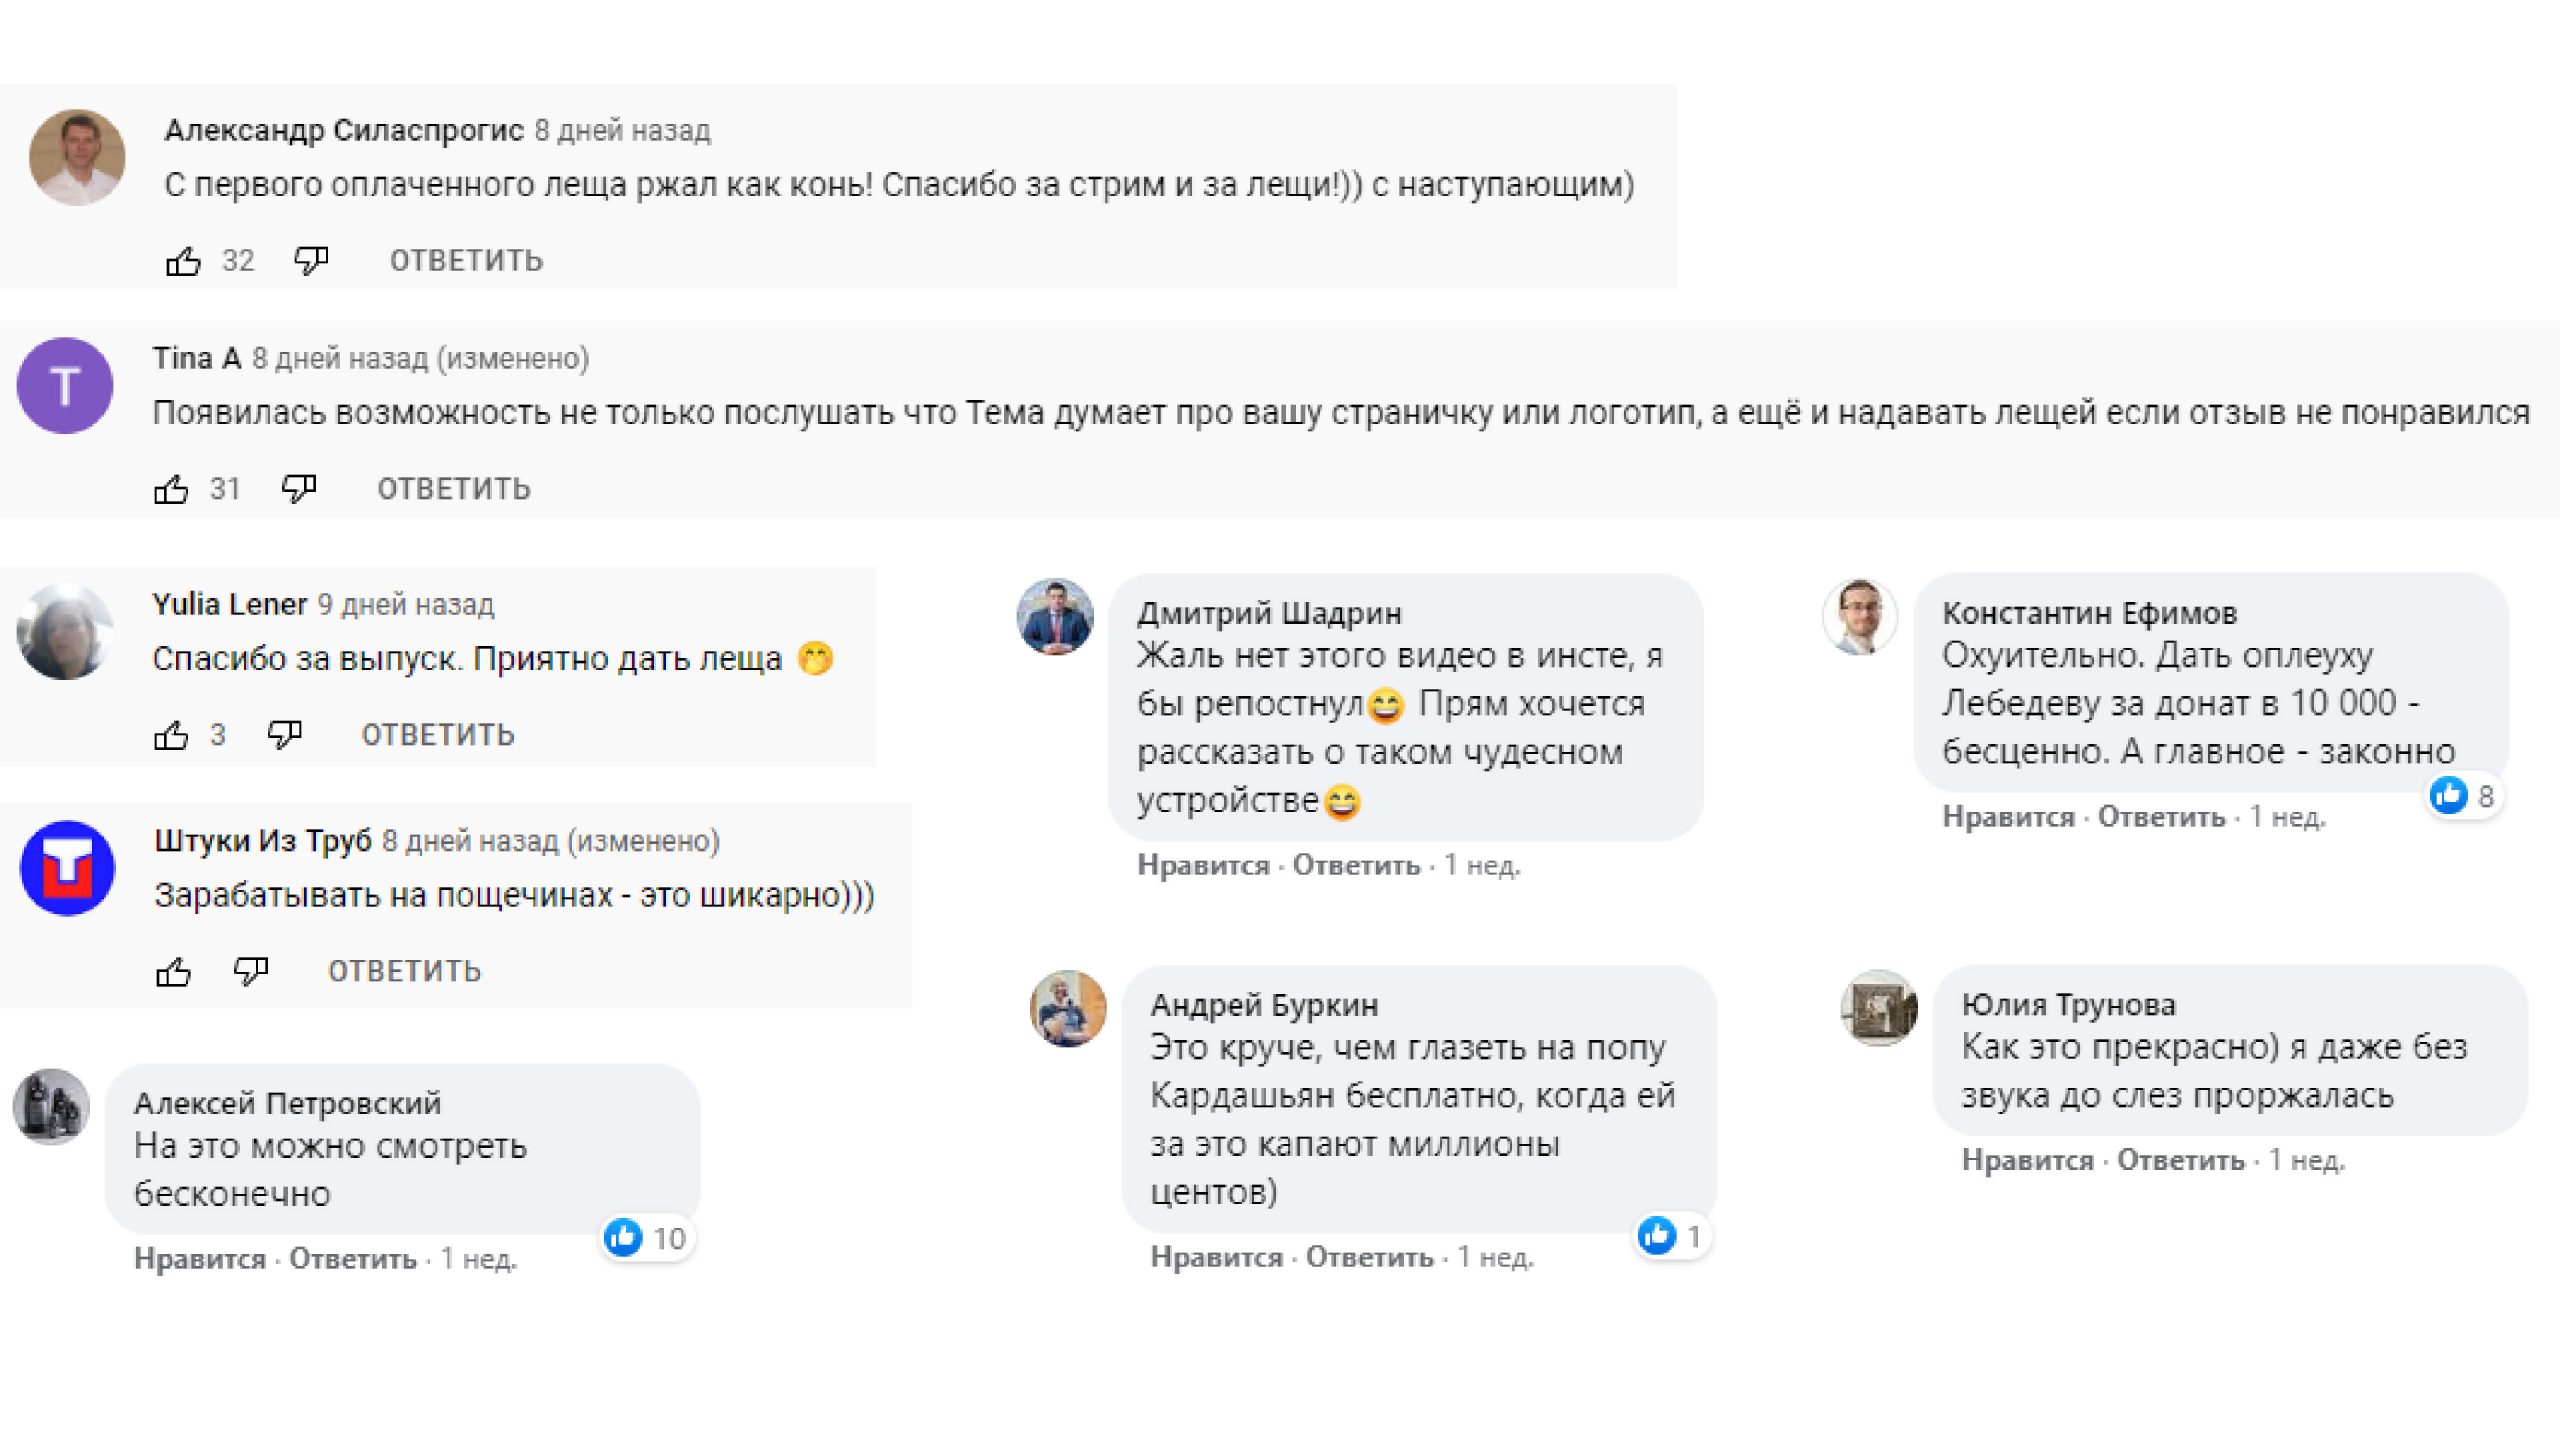 Артемий лебедев комментарии comments шлепатель